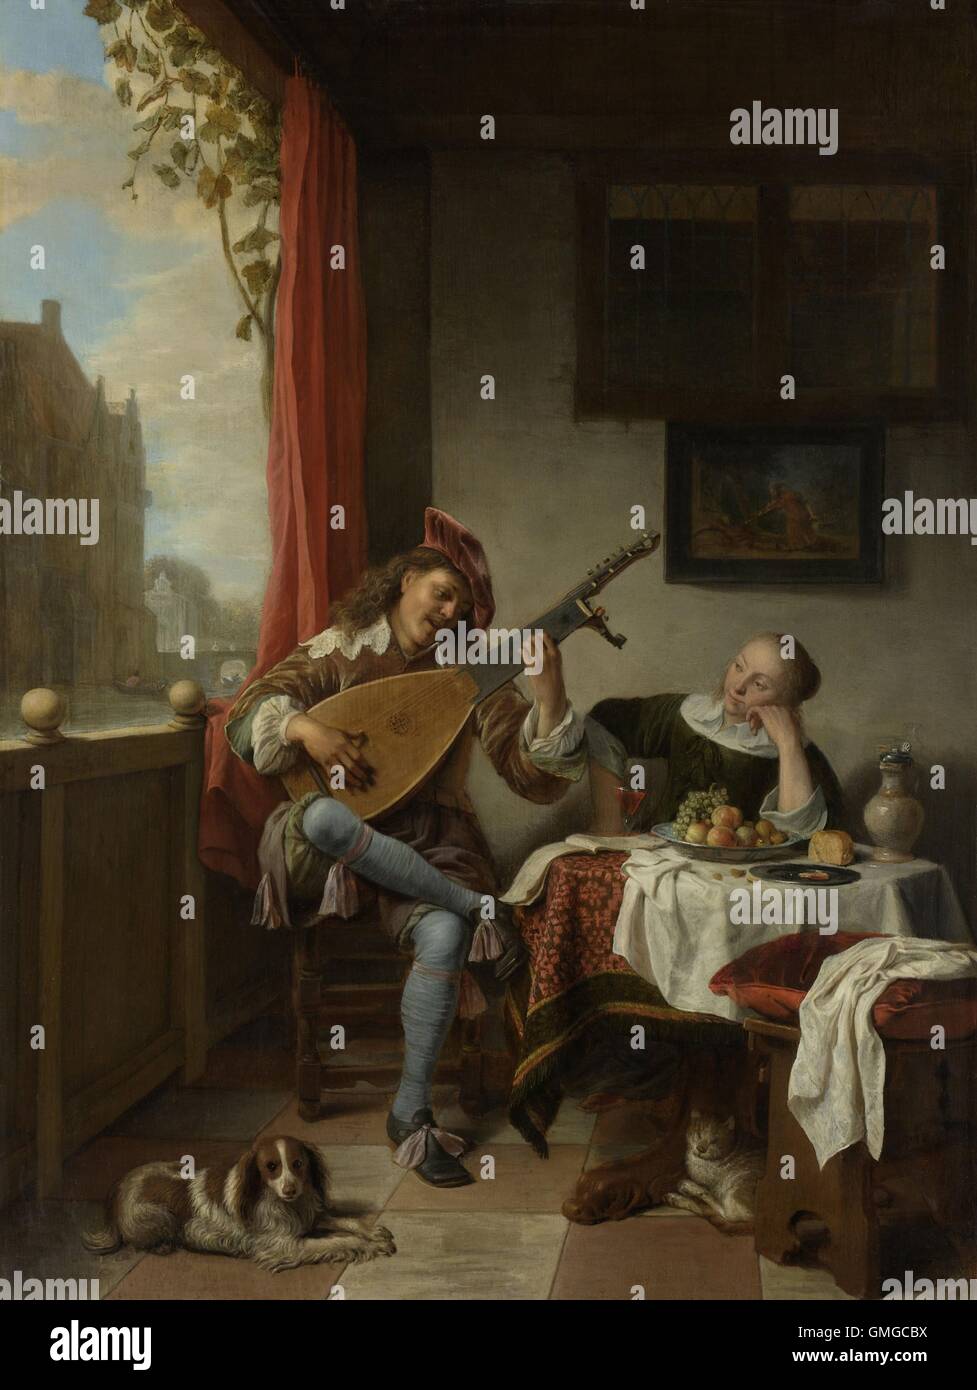 Der Lautenist, von Hendrick Sorgh, 1661, niederländische Malerei, Öl auf Holz. Junger Mann ist singen und spielen die laute auf einer offenen Veranda neben einer jungen Frau. Auf der Etage befinden, ein Hund und eine Katze und ein Gemälde der tragischen liebenden Ovids Pyramus und Thisbe, hängt an der Wand (BSLOC 2016 3 222) Stockfoto